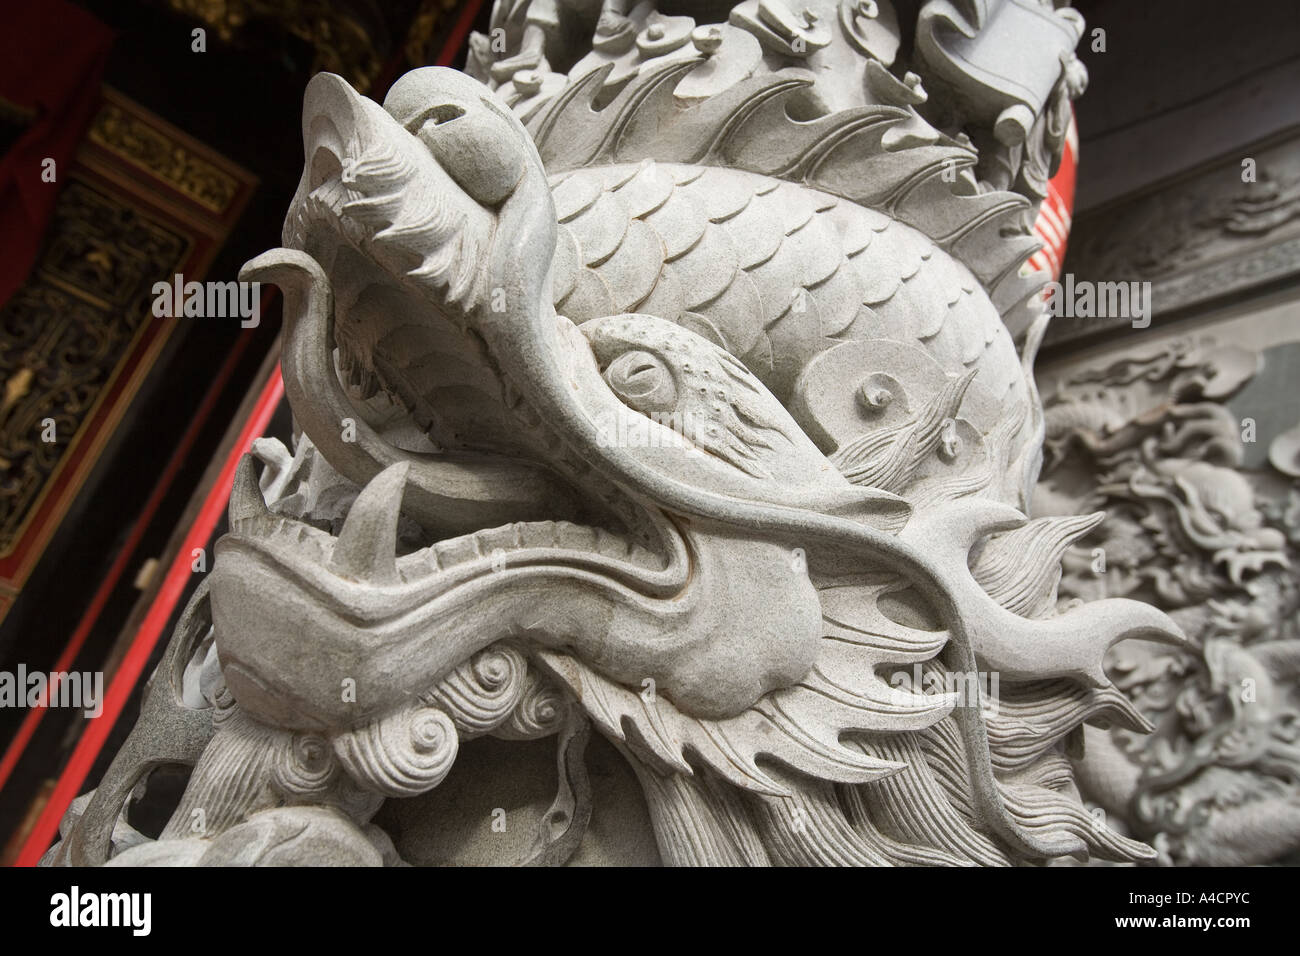 La Malaisie Melaka Jalan Tun Tan Cheng Lock Fra Choon Temple chinois de la sculpture sur pierre Banque D'Images